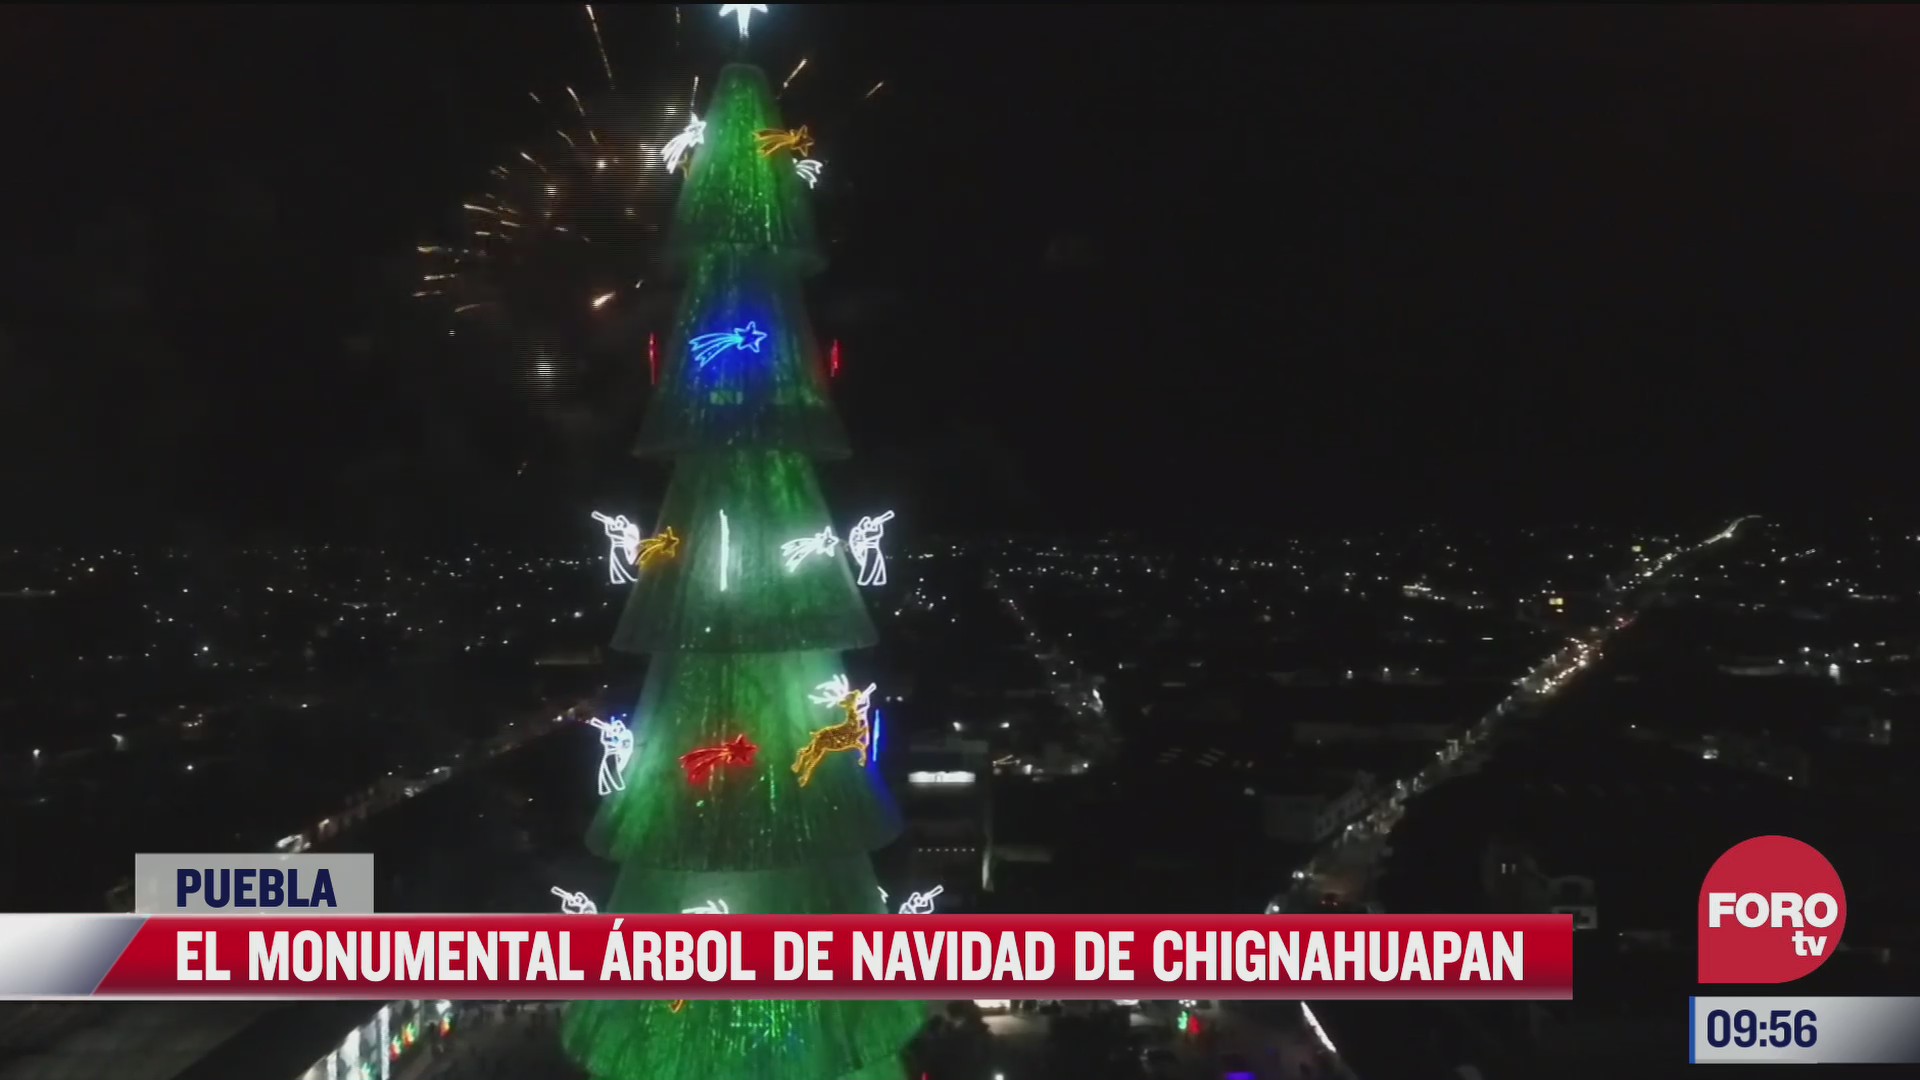 encienden enorme arbol de navidad en chignahuapan